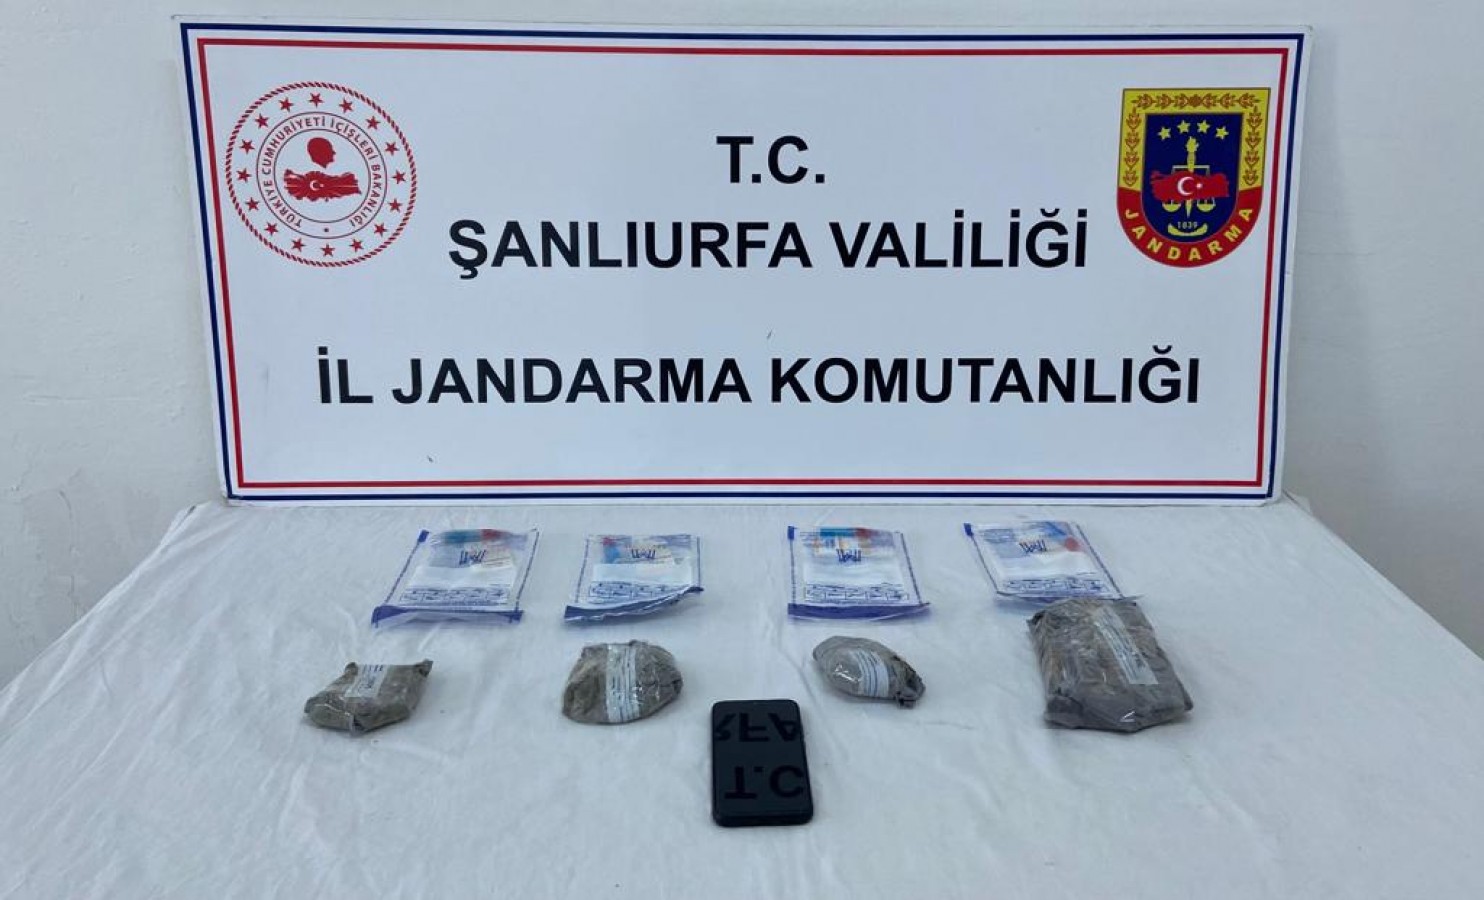 Şanlıurfa'da jandarma birimlerinin ortak uyuşturucu çalışmasında 2 kişi yakalandı